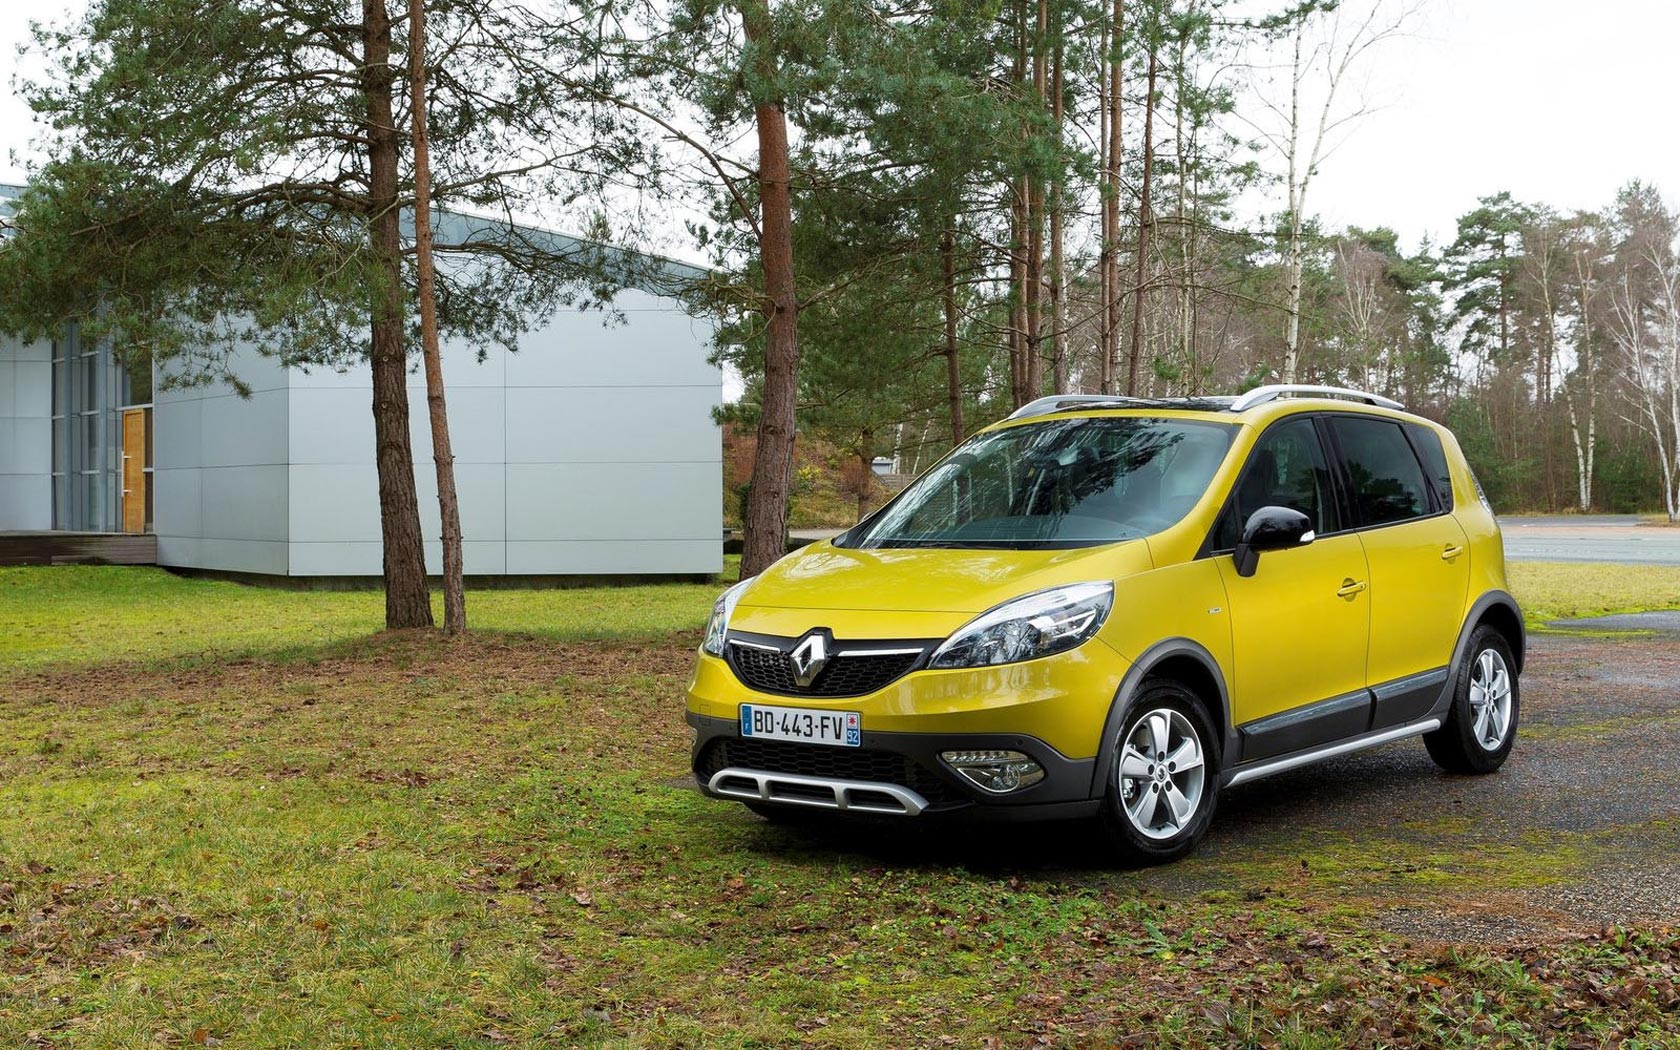  Renault Scenic XMOD 